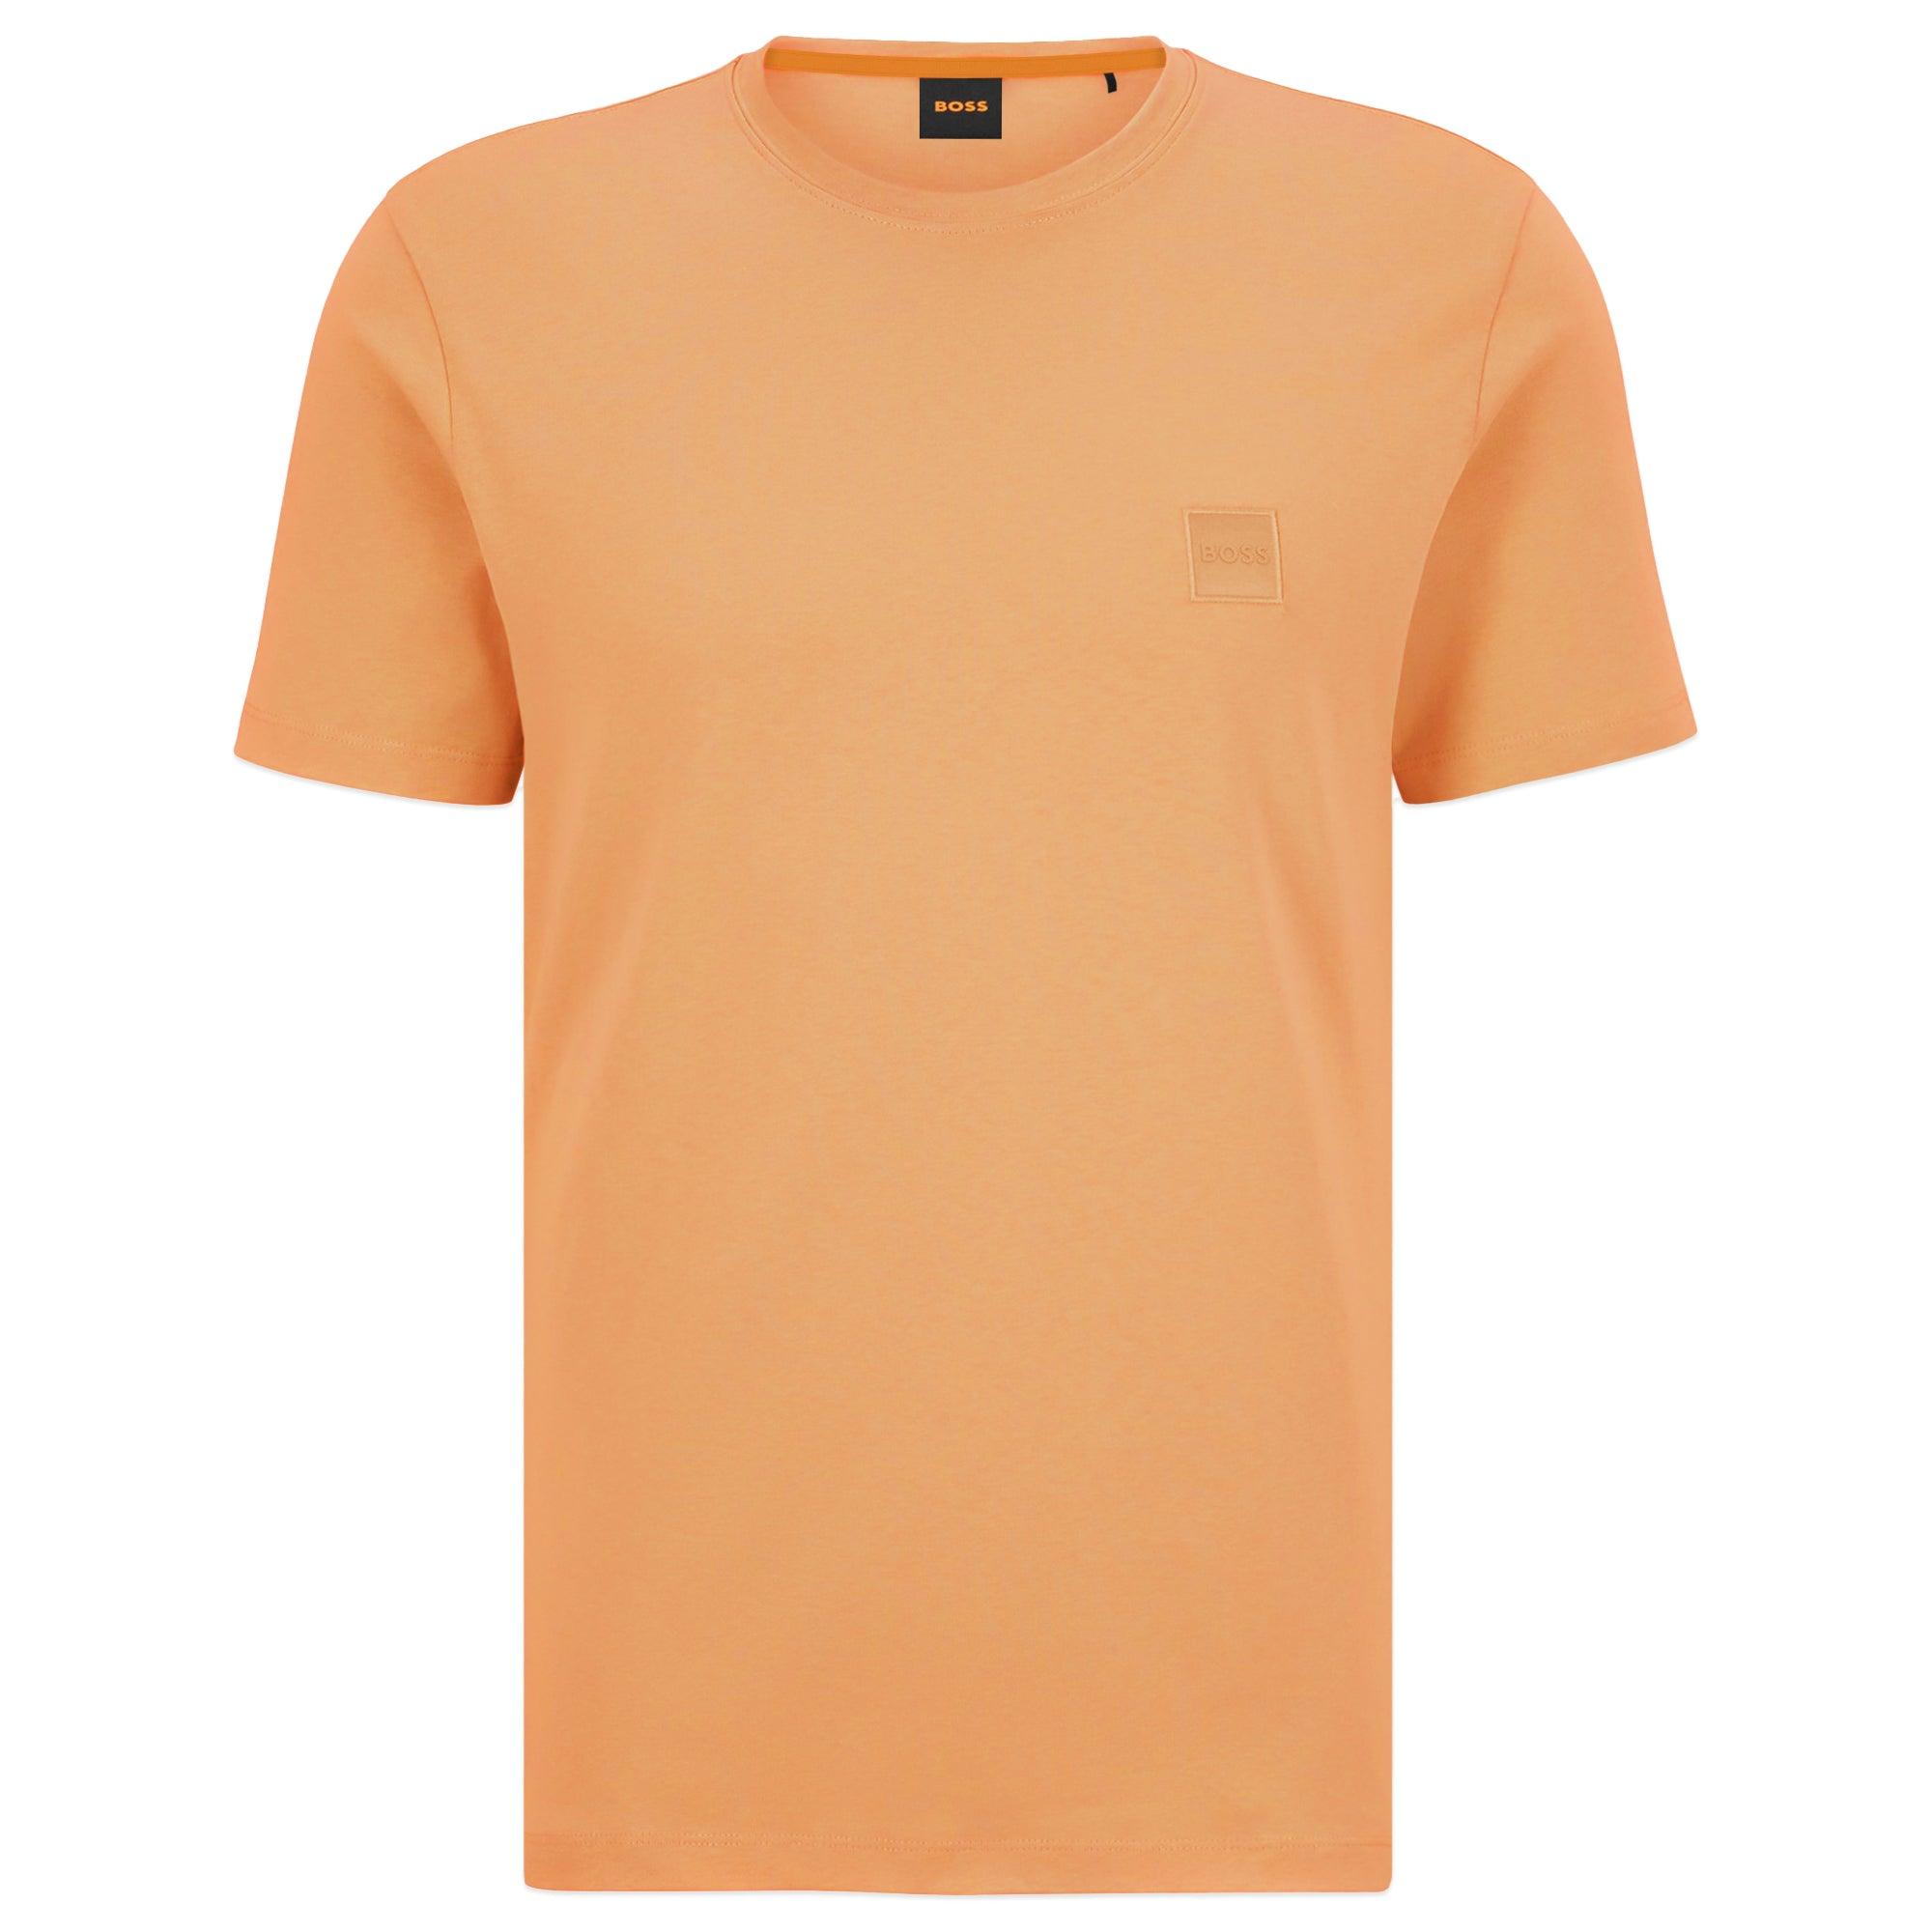 BOSS by HUGO BOSS Tales T-shirt in Orange for Men | Lyst | 